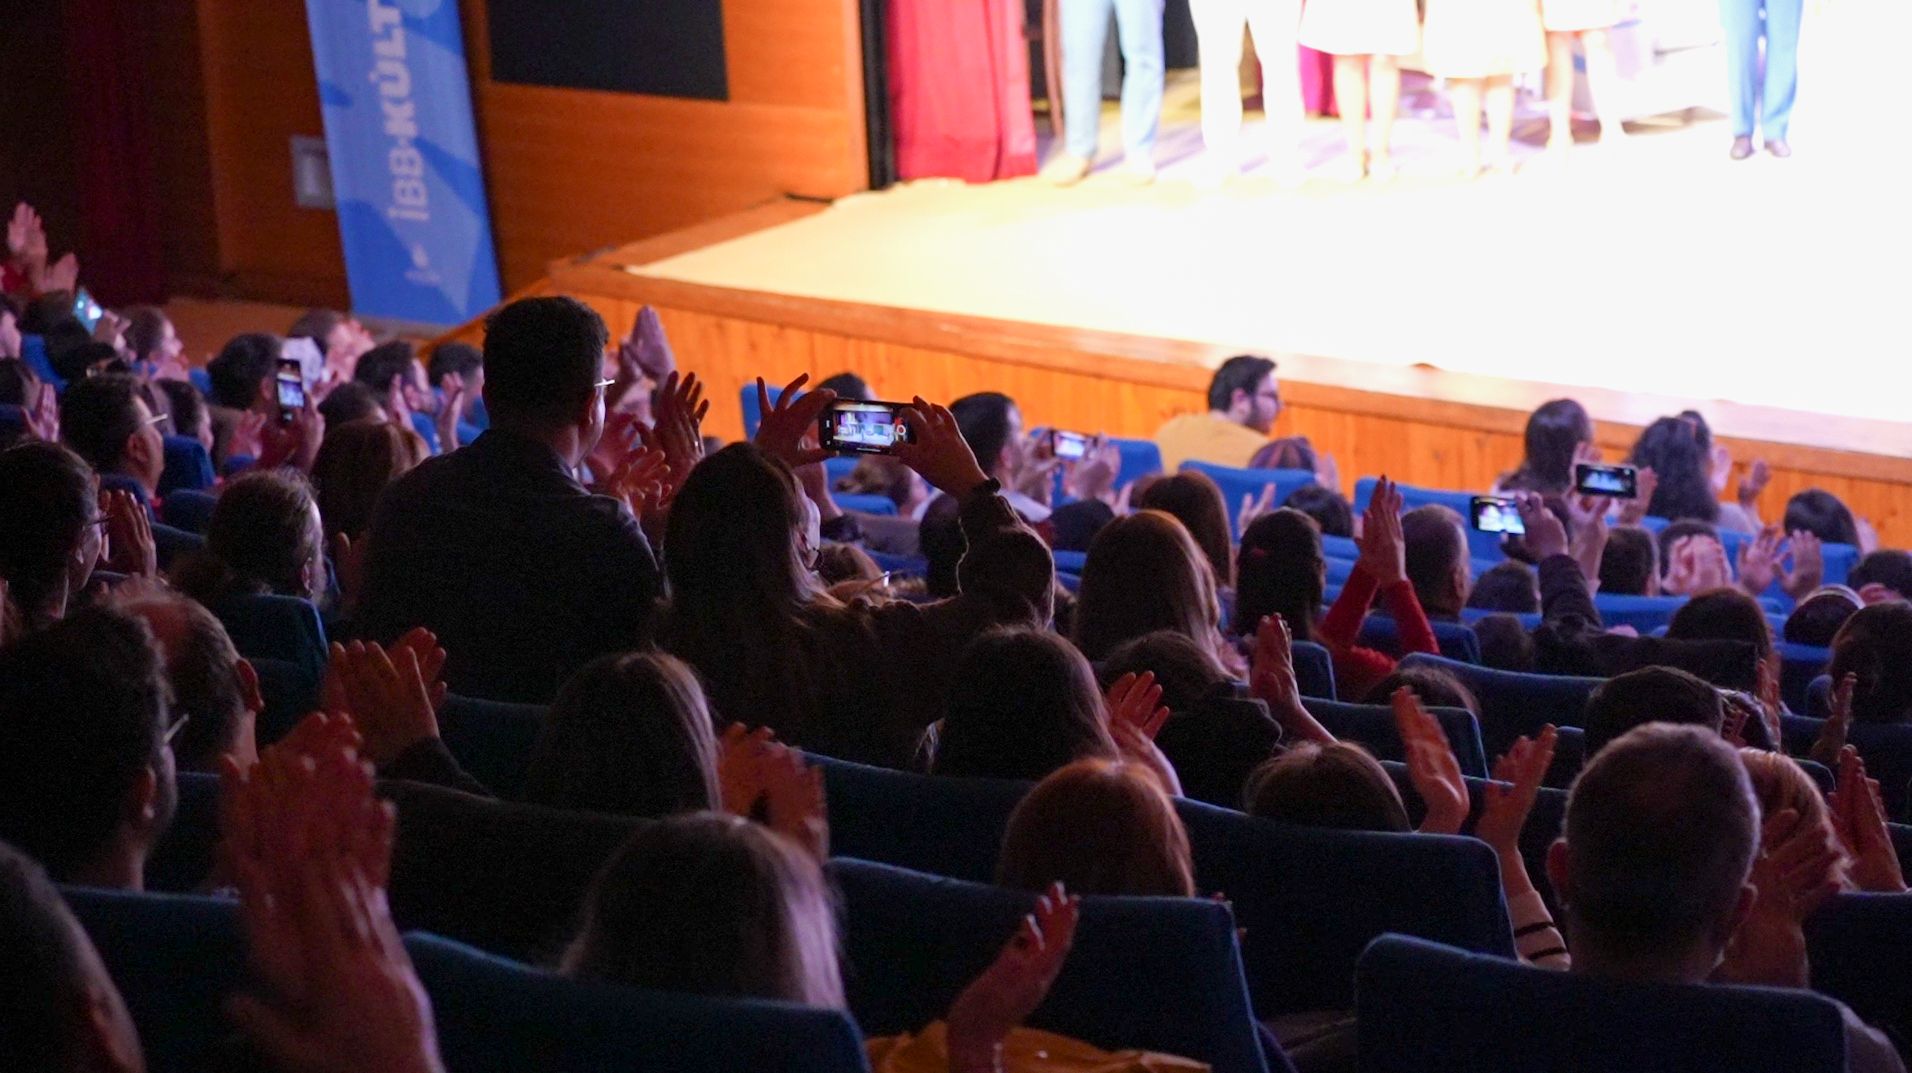 İBB Şehir Tiyatroları’nın oyunlarından ”Oscar” seyircisiyle buluştu